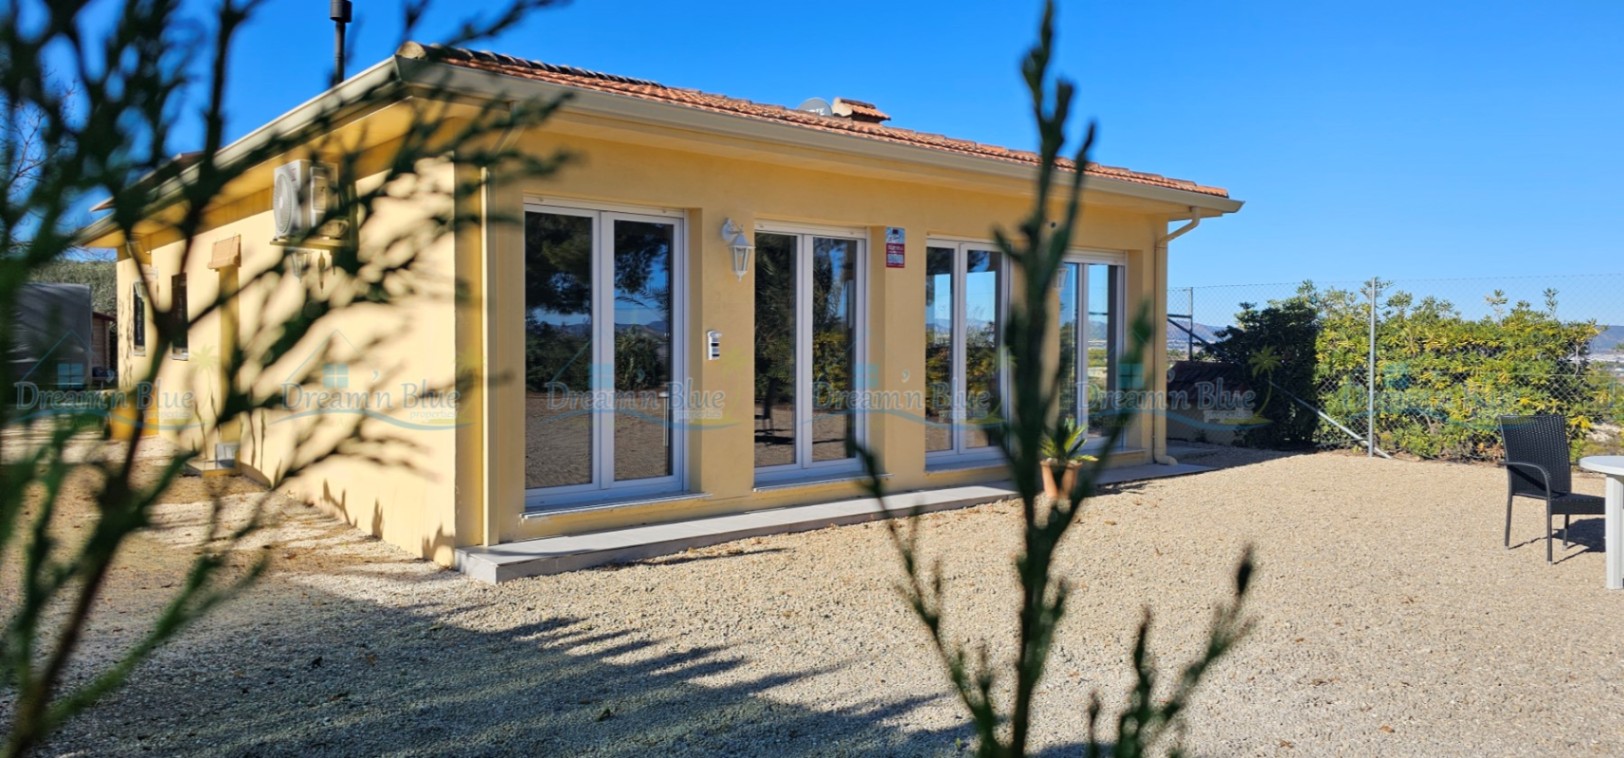 Villa zum Verkauf in der Gegend von Albaida